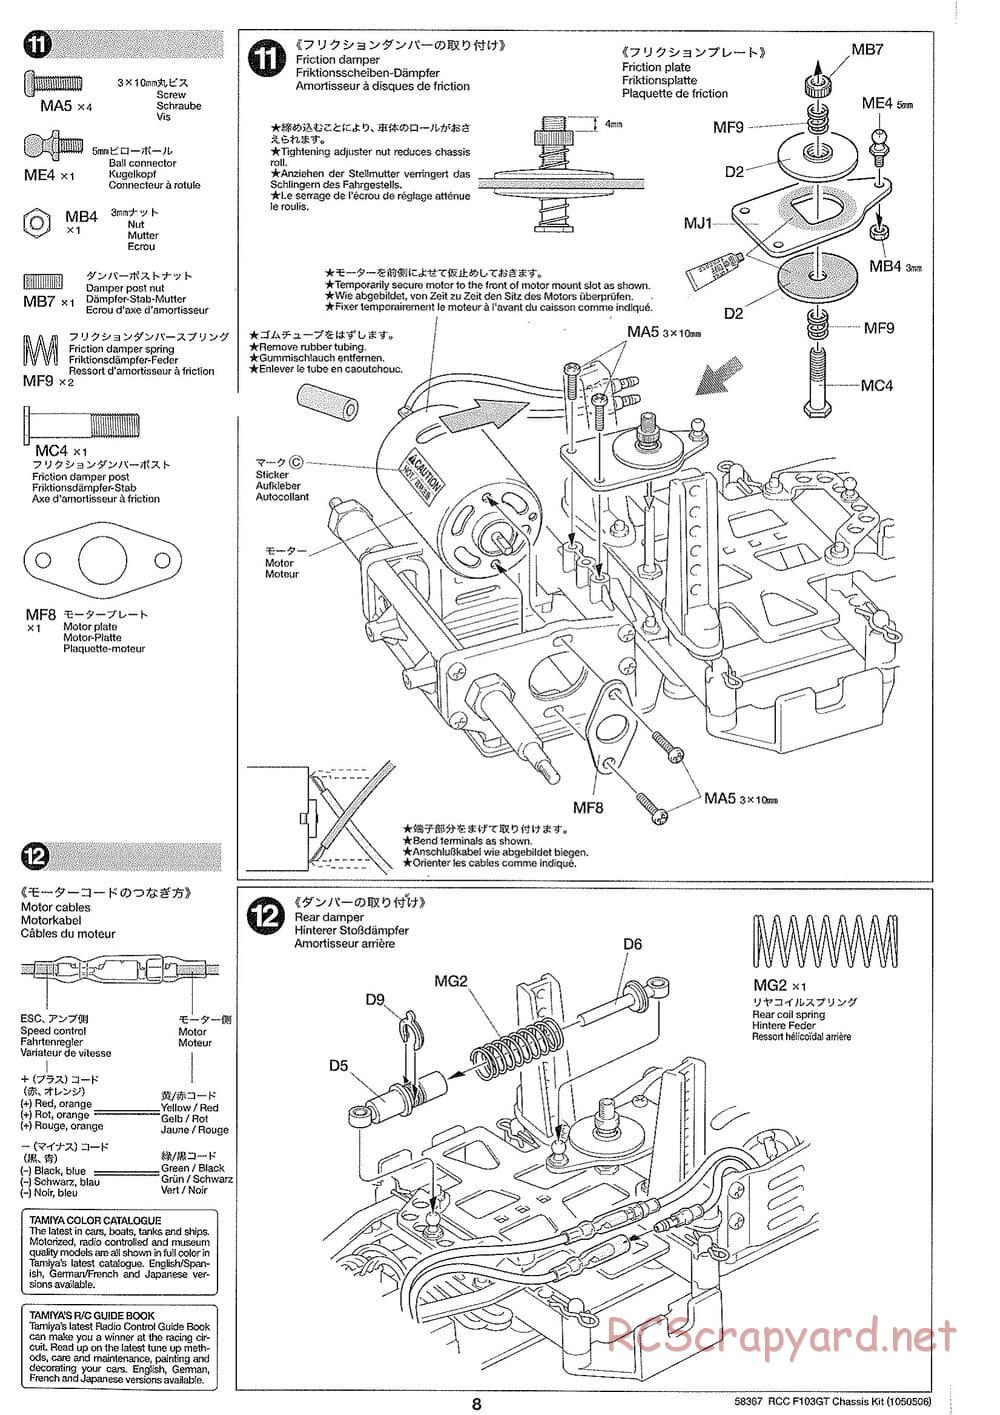 Tamiya - F103GT Chassis Kit - Manual - Page 8